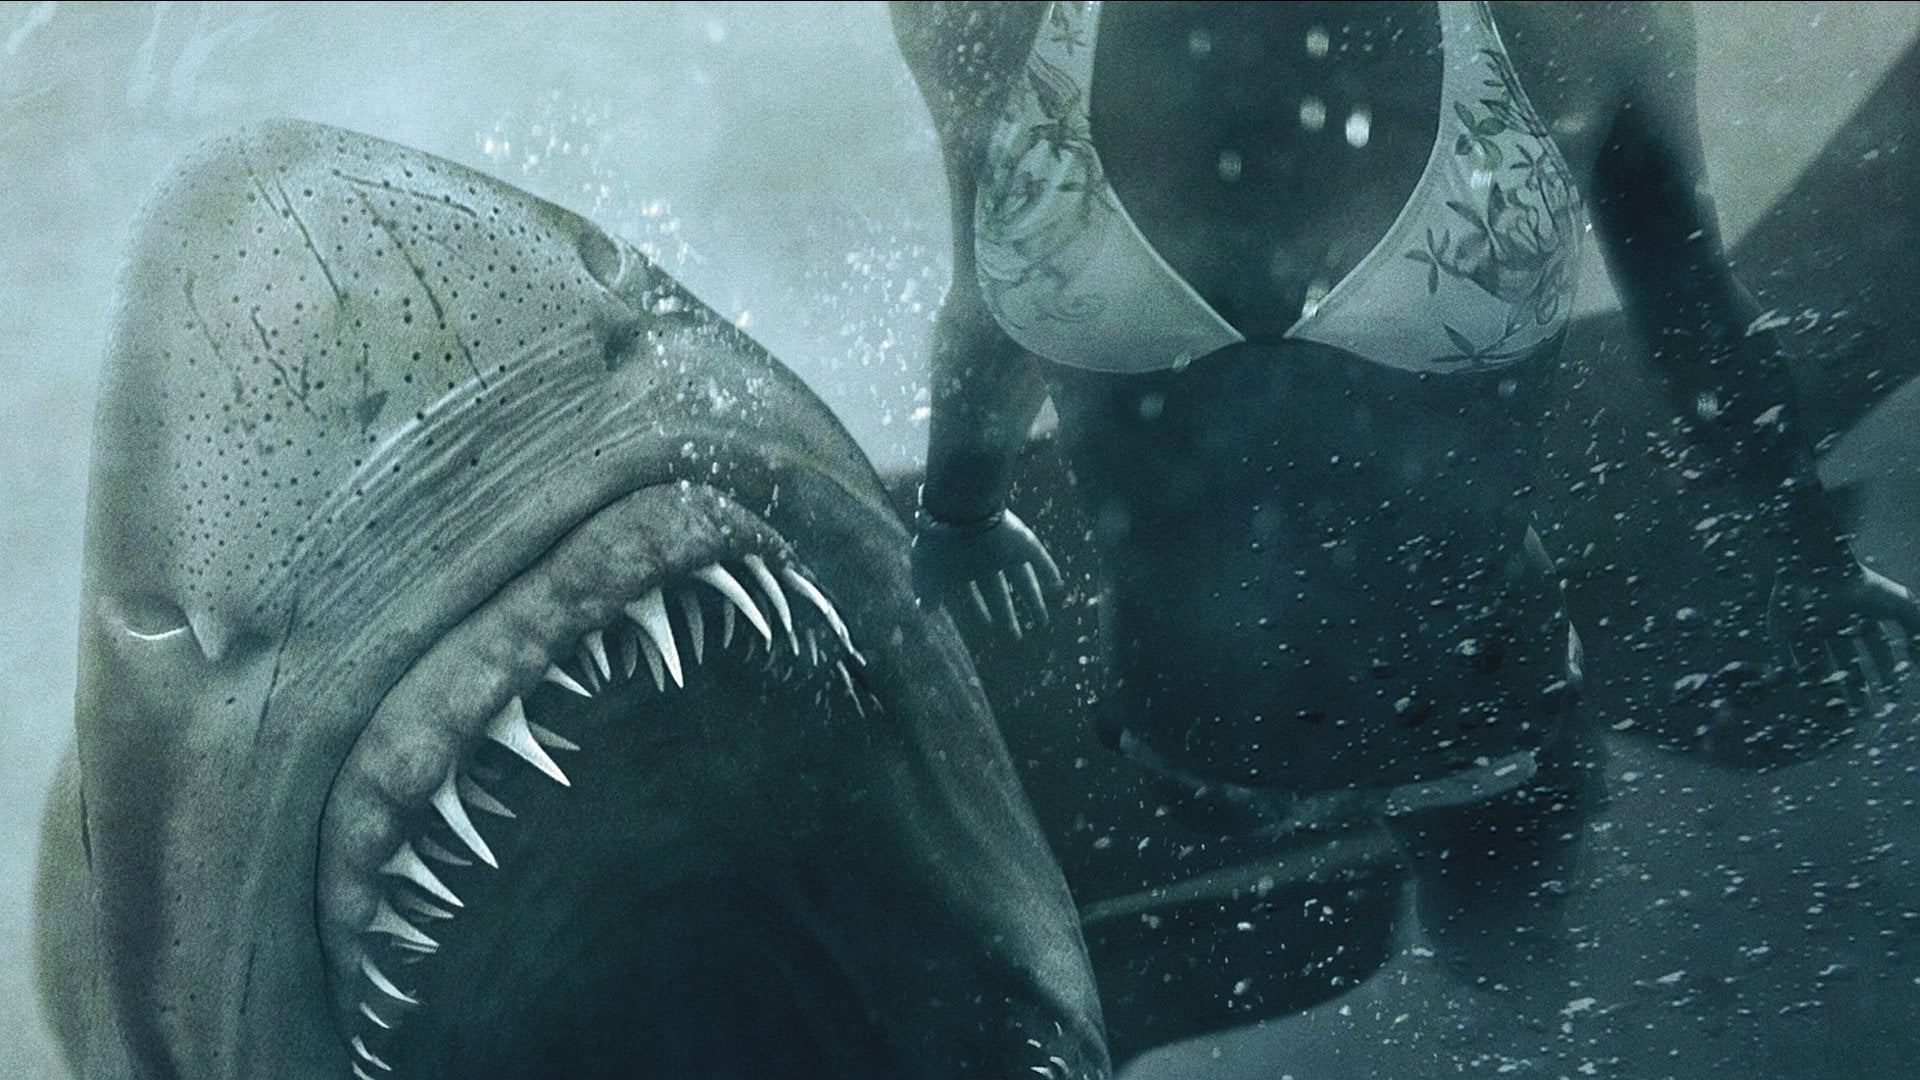 Shark Night 3D (2011)